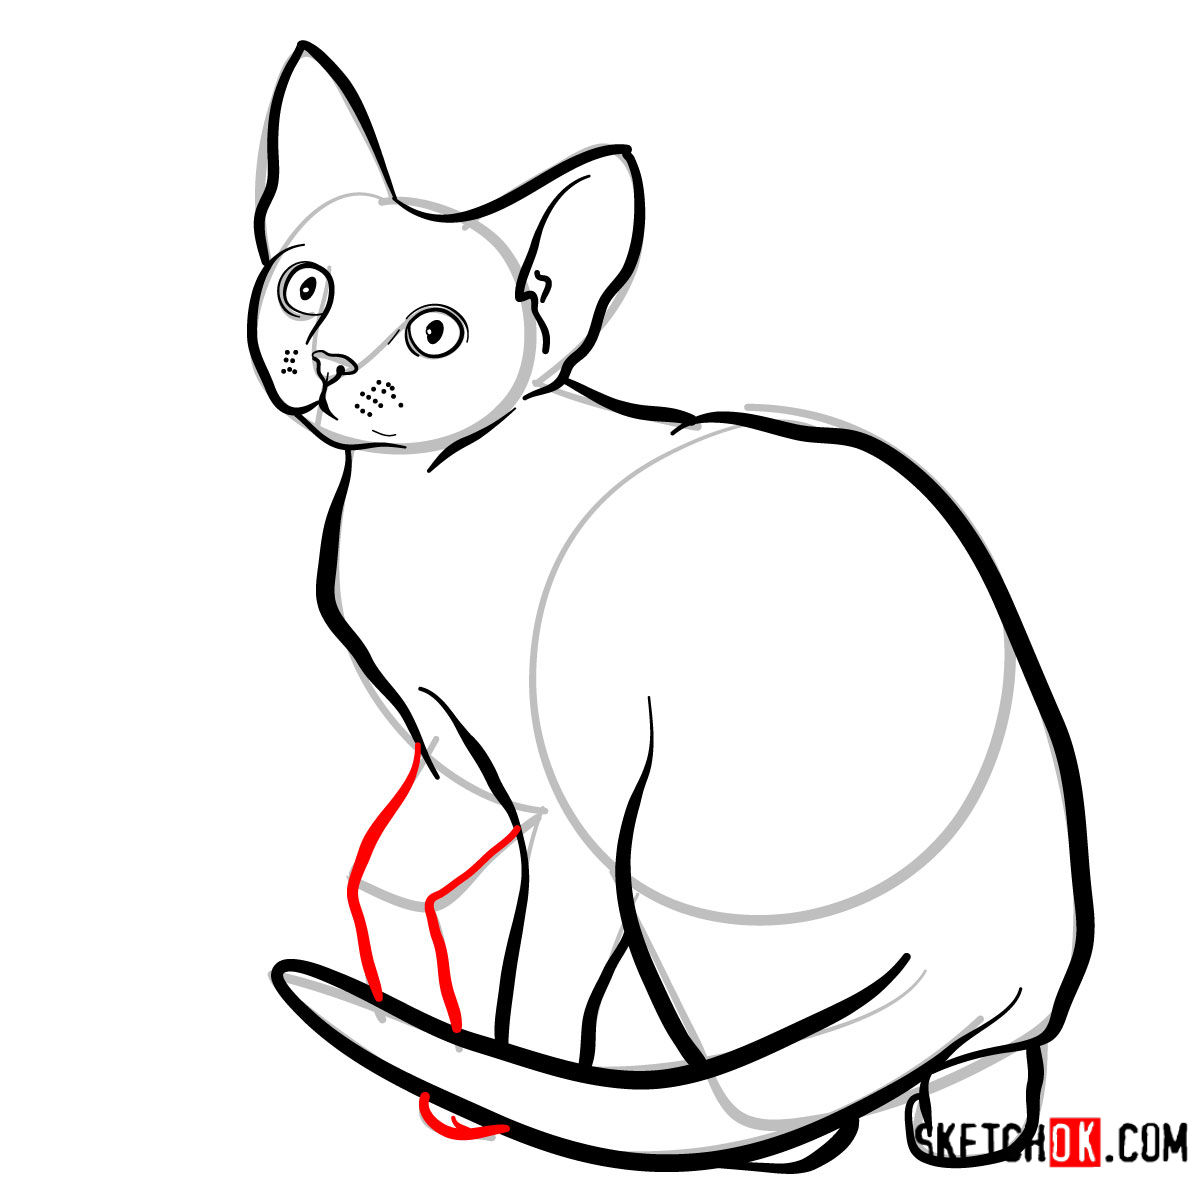 How to draw the Devon Rex cat - step 09